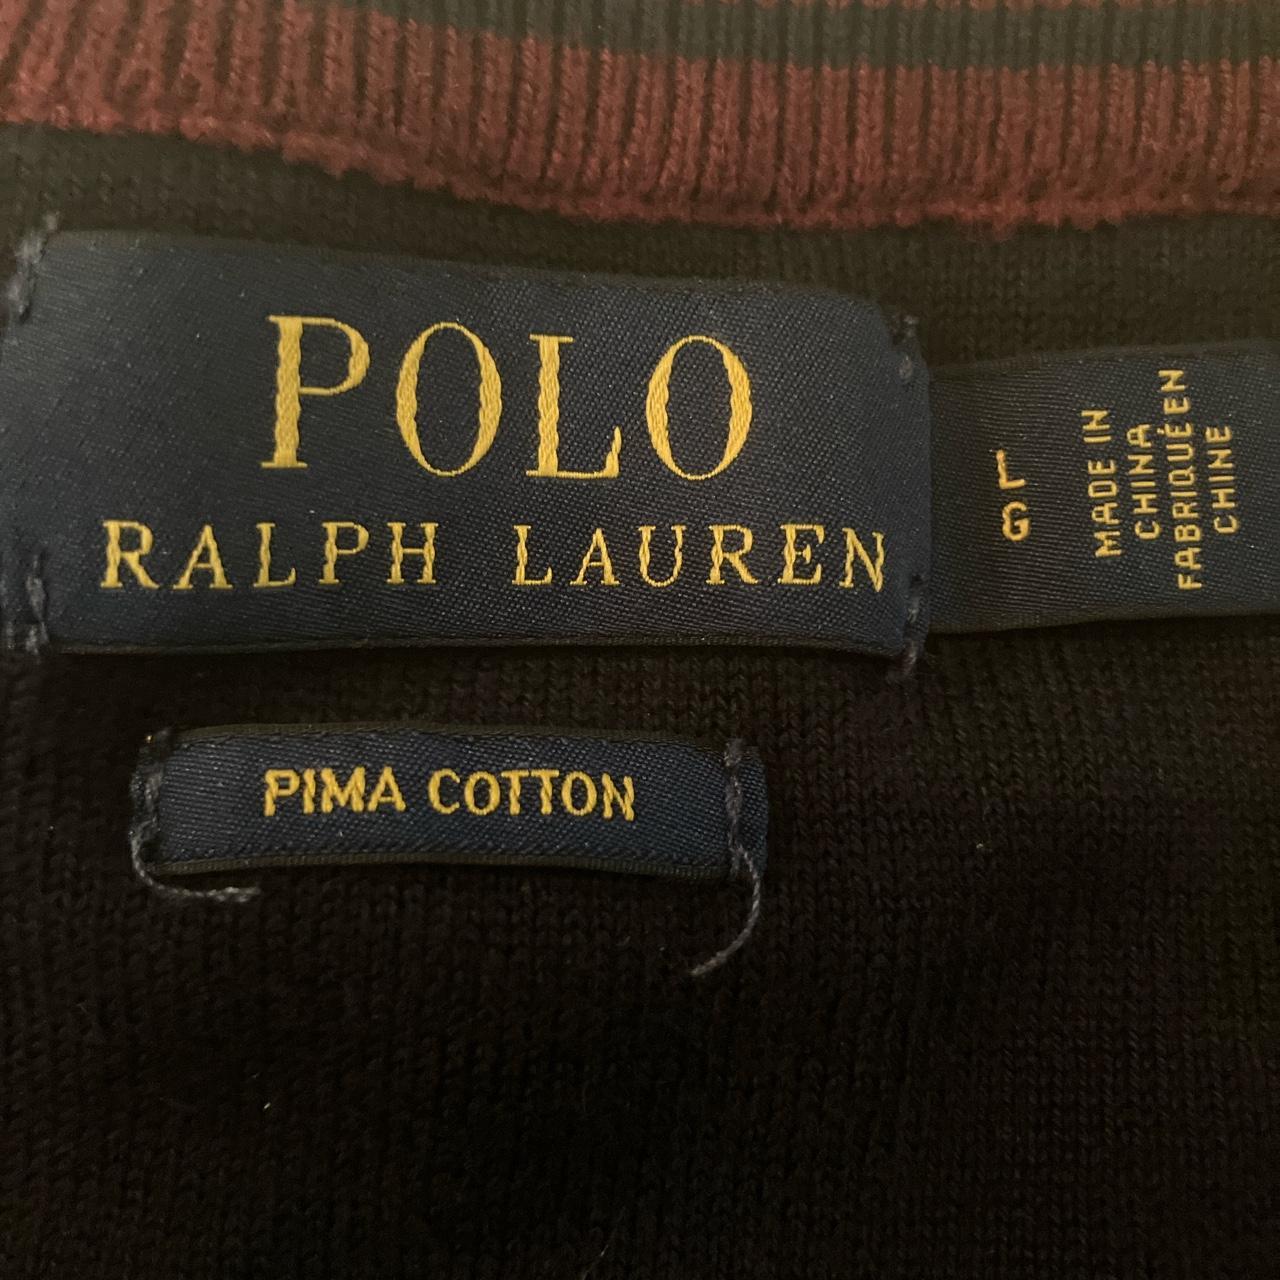 Polo Ralph Lauren Crew Neck size Women’s L Pit to... - Depop